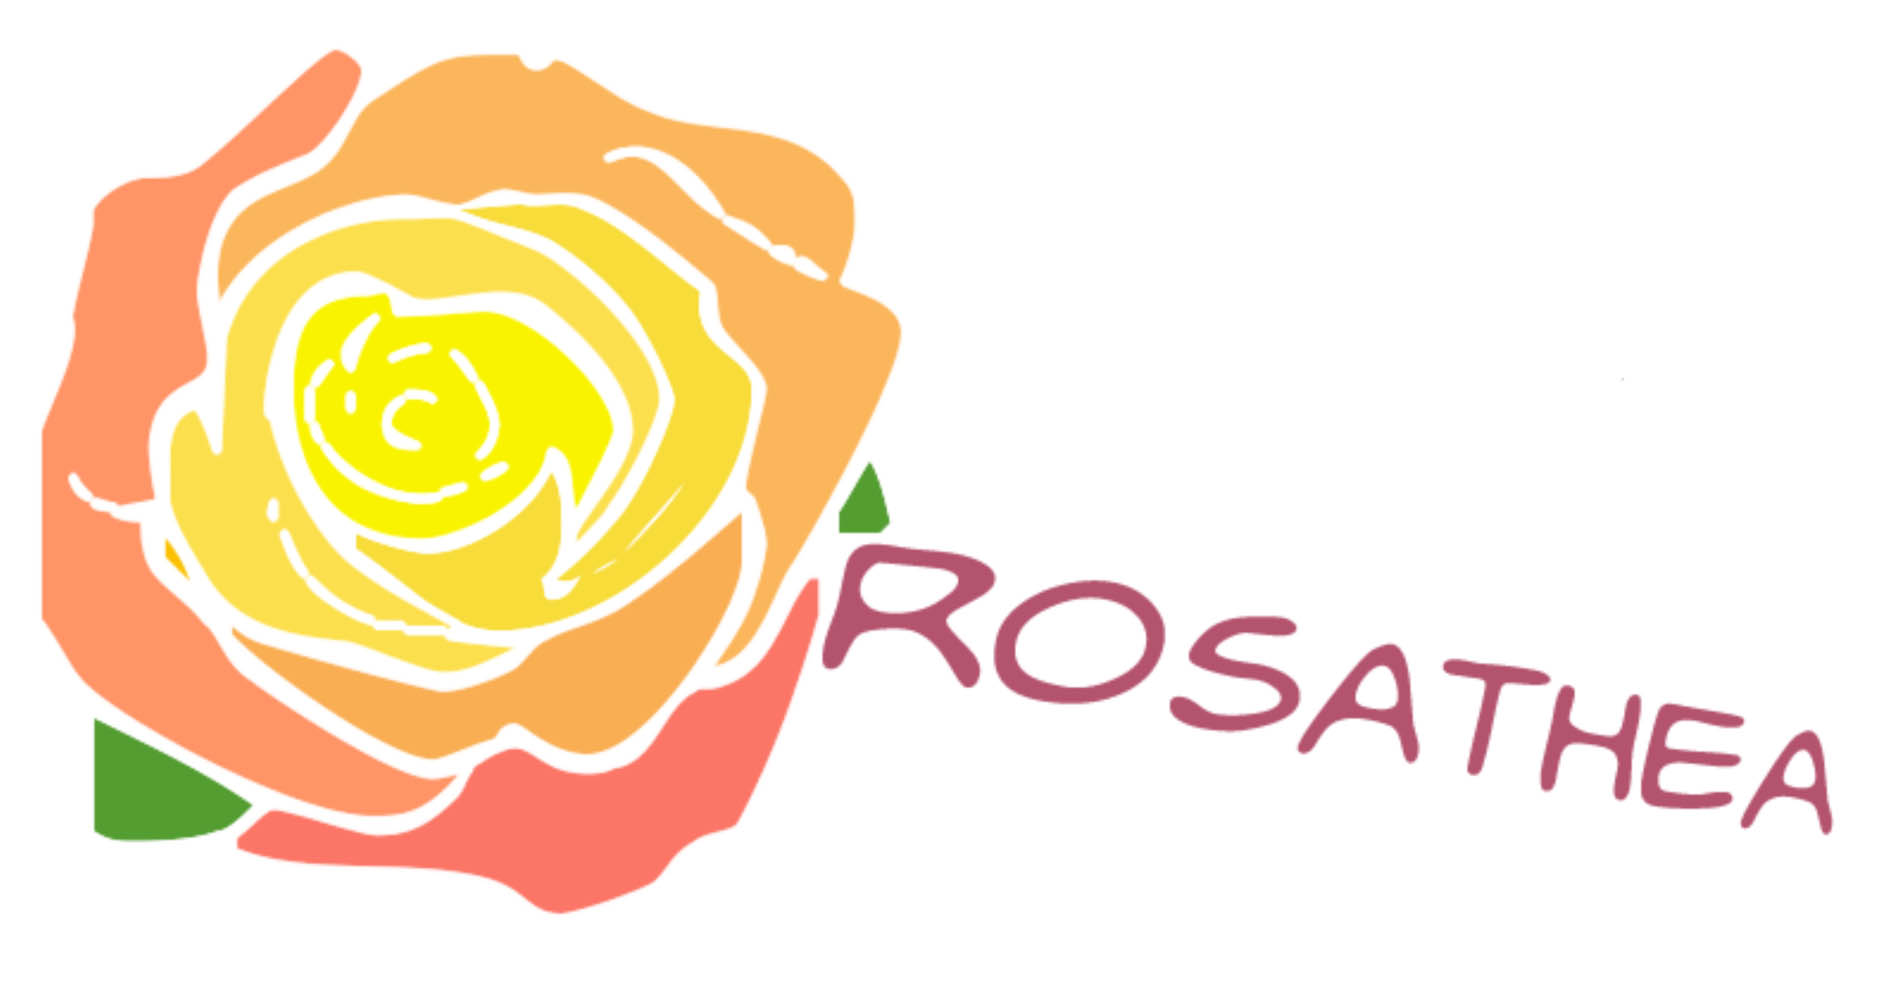 Progetti in Italia - Il Centro Rosa Thea